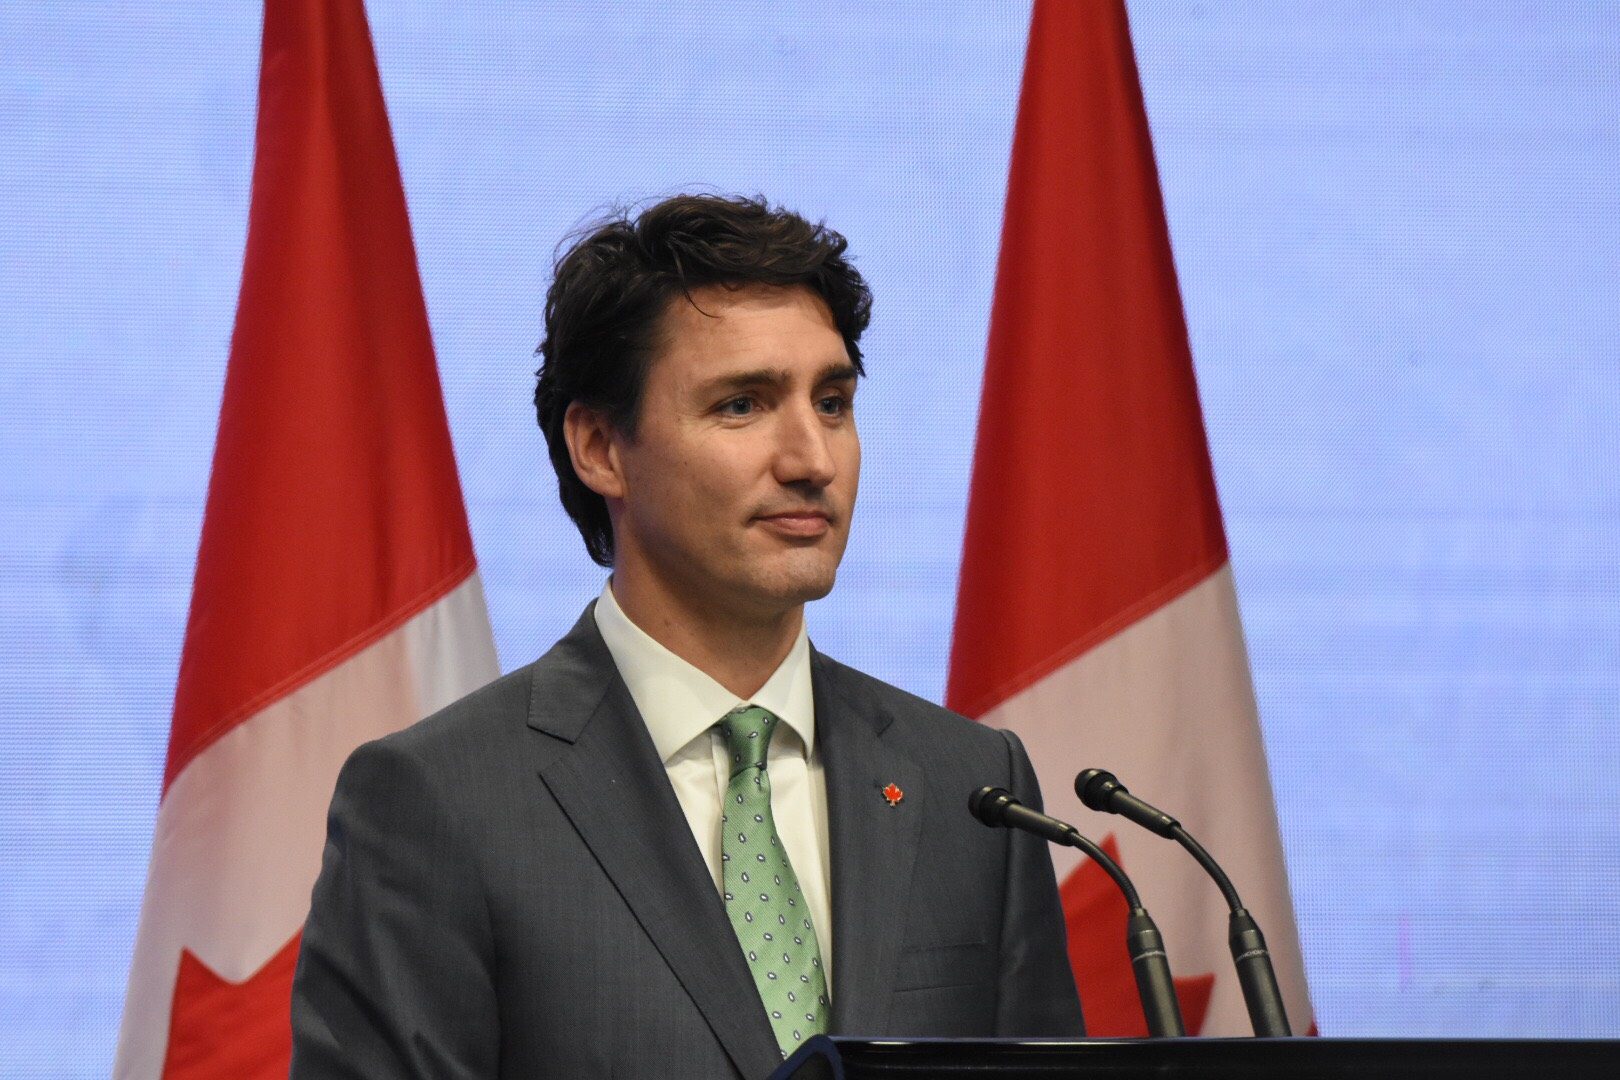 Canada’s Justin Trudeau to run again in 2019